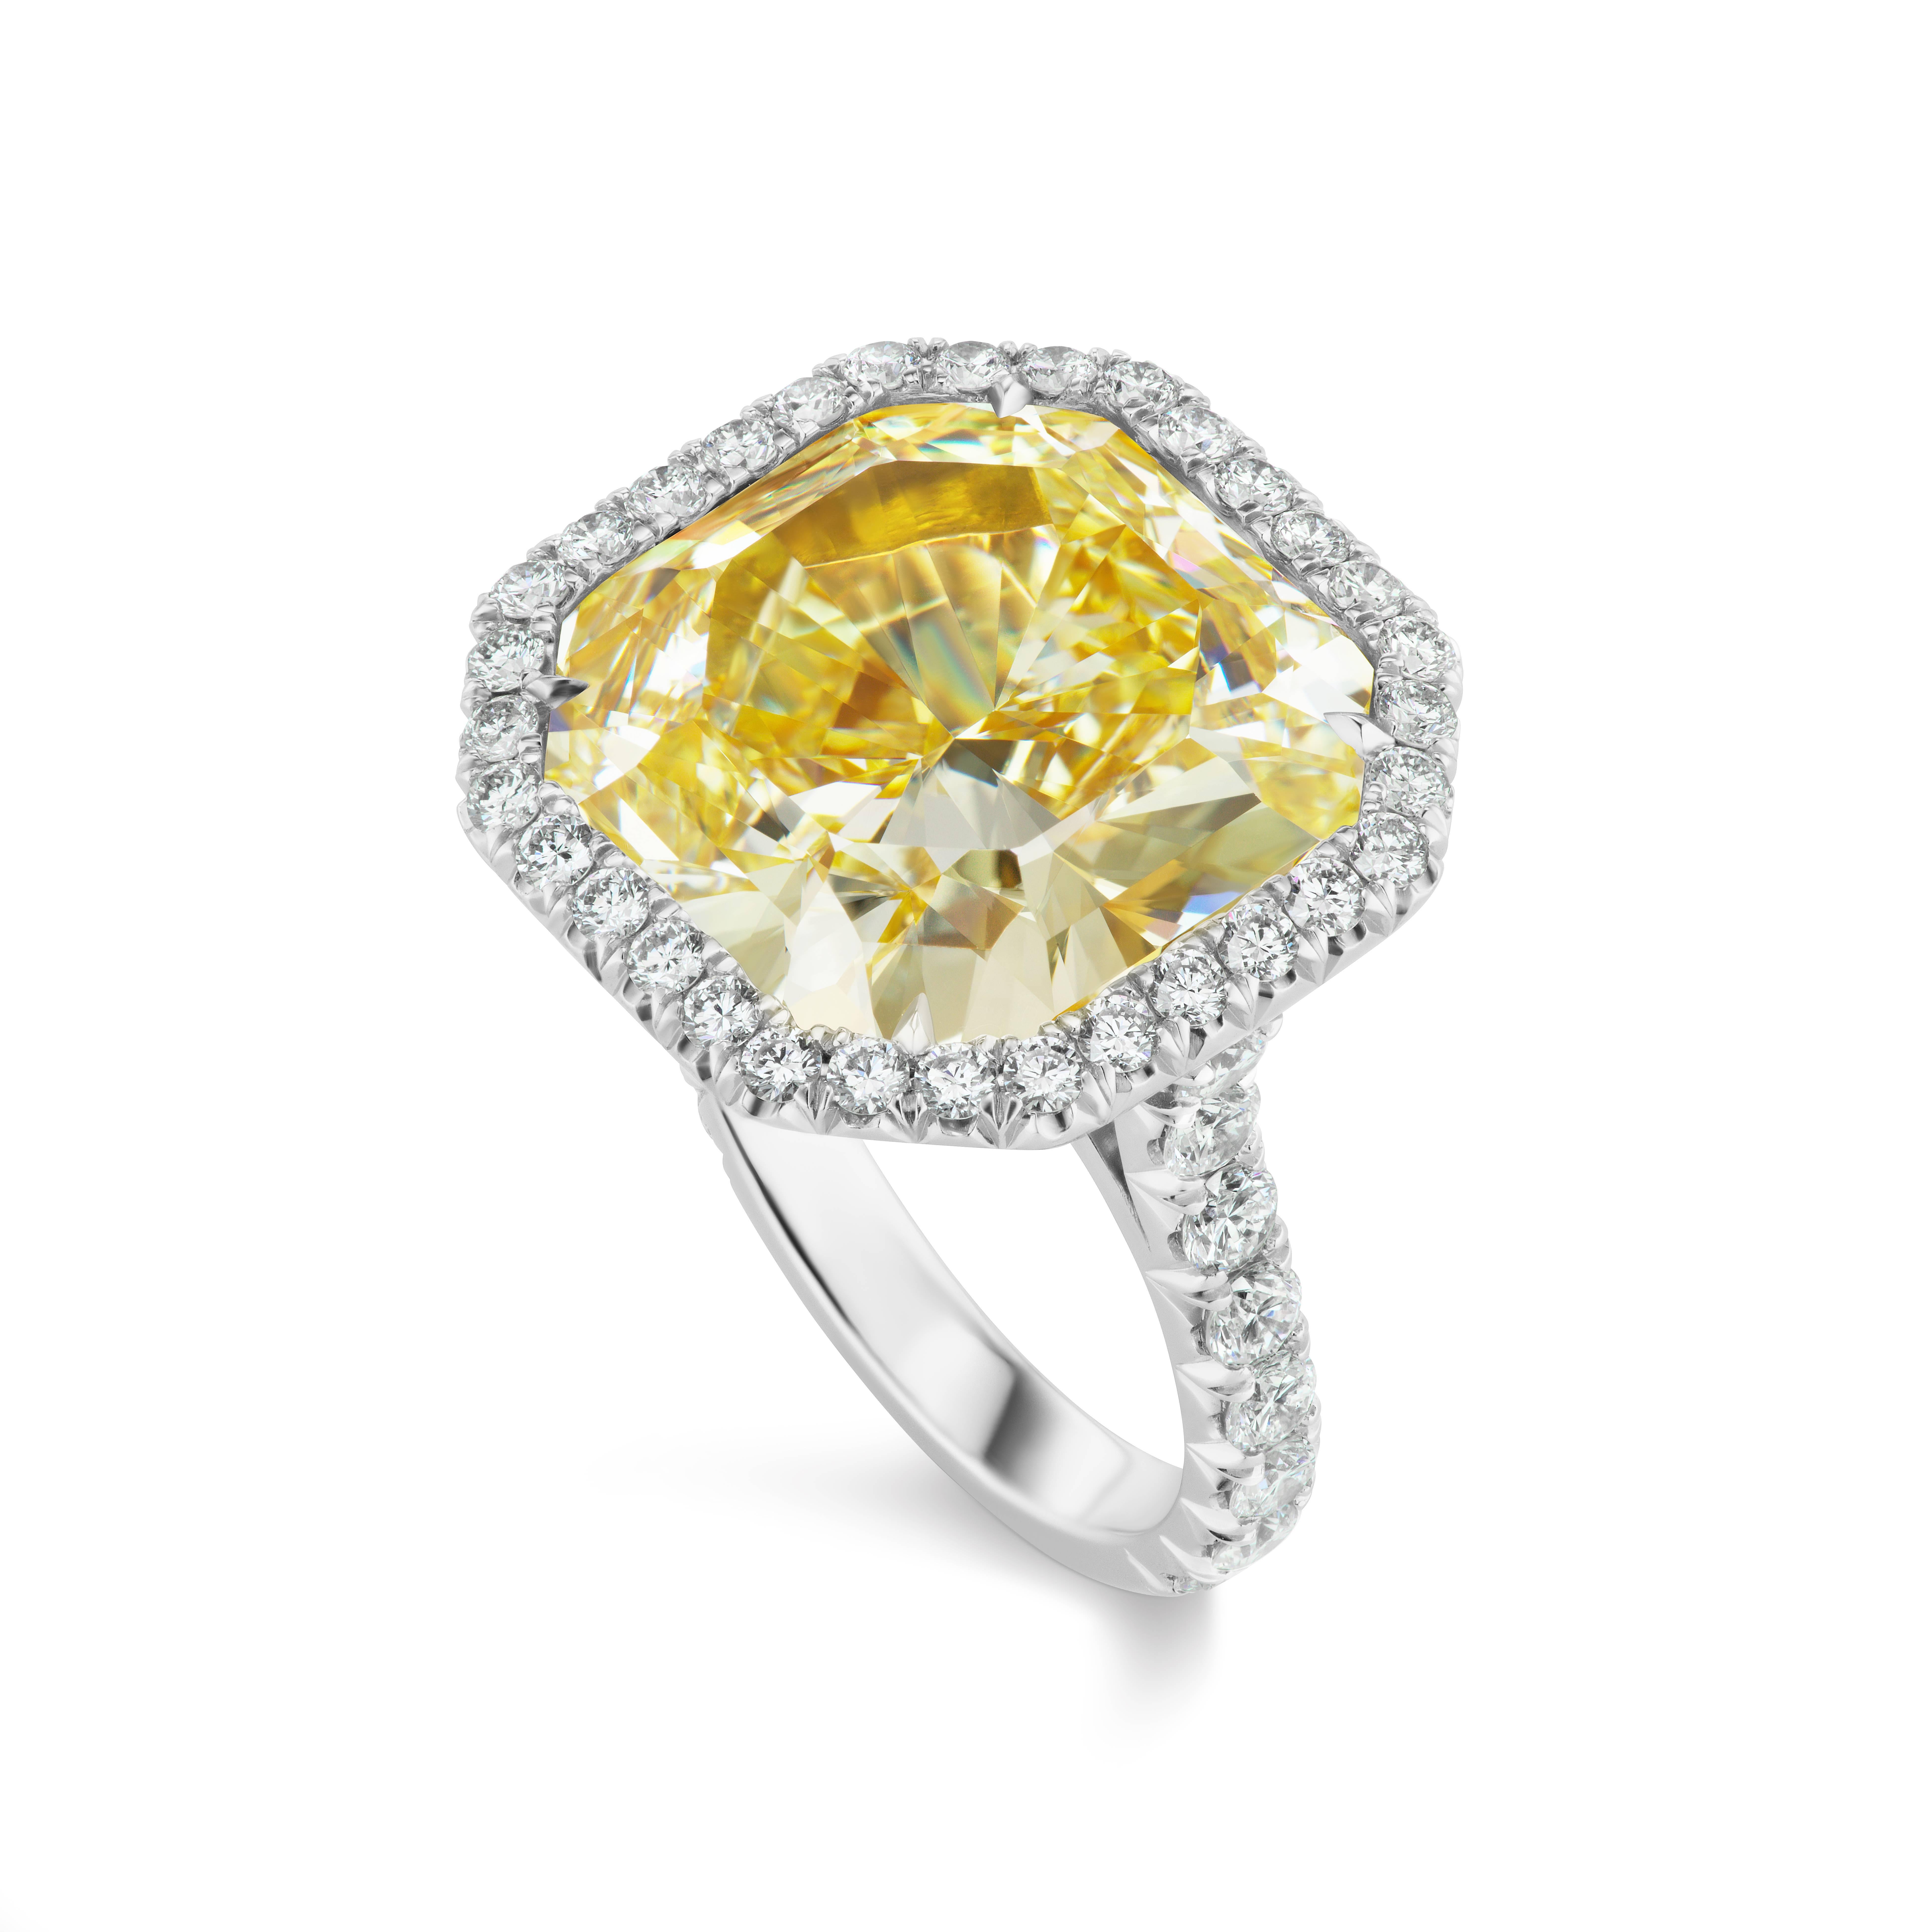 Diese schöne klassische Ring von Scarselli verfügt über eine 15,03 Karat Fancy Intense Yellow  Diamant im Radiant-Schliff mit GIA-Zertifikat.  Der zentrale Diamant ist von 48 runden weißen Brillanten von insgesamt 1,66 Karat umgeben. Die Fassung ist